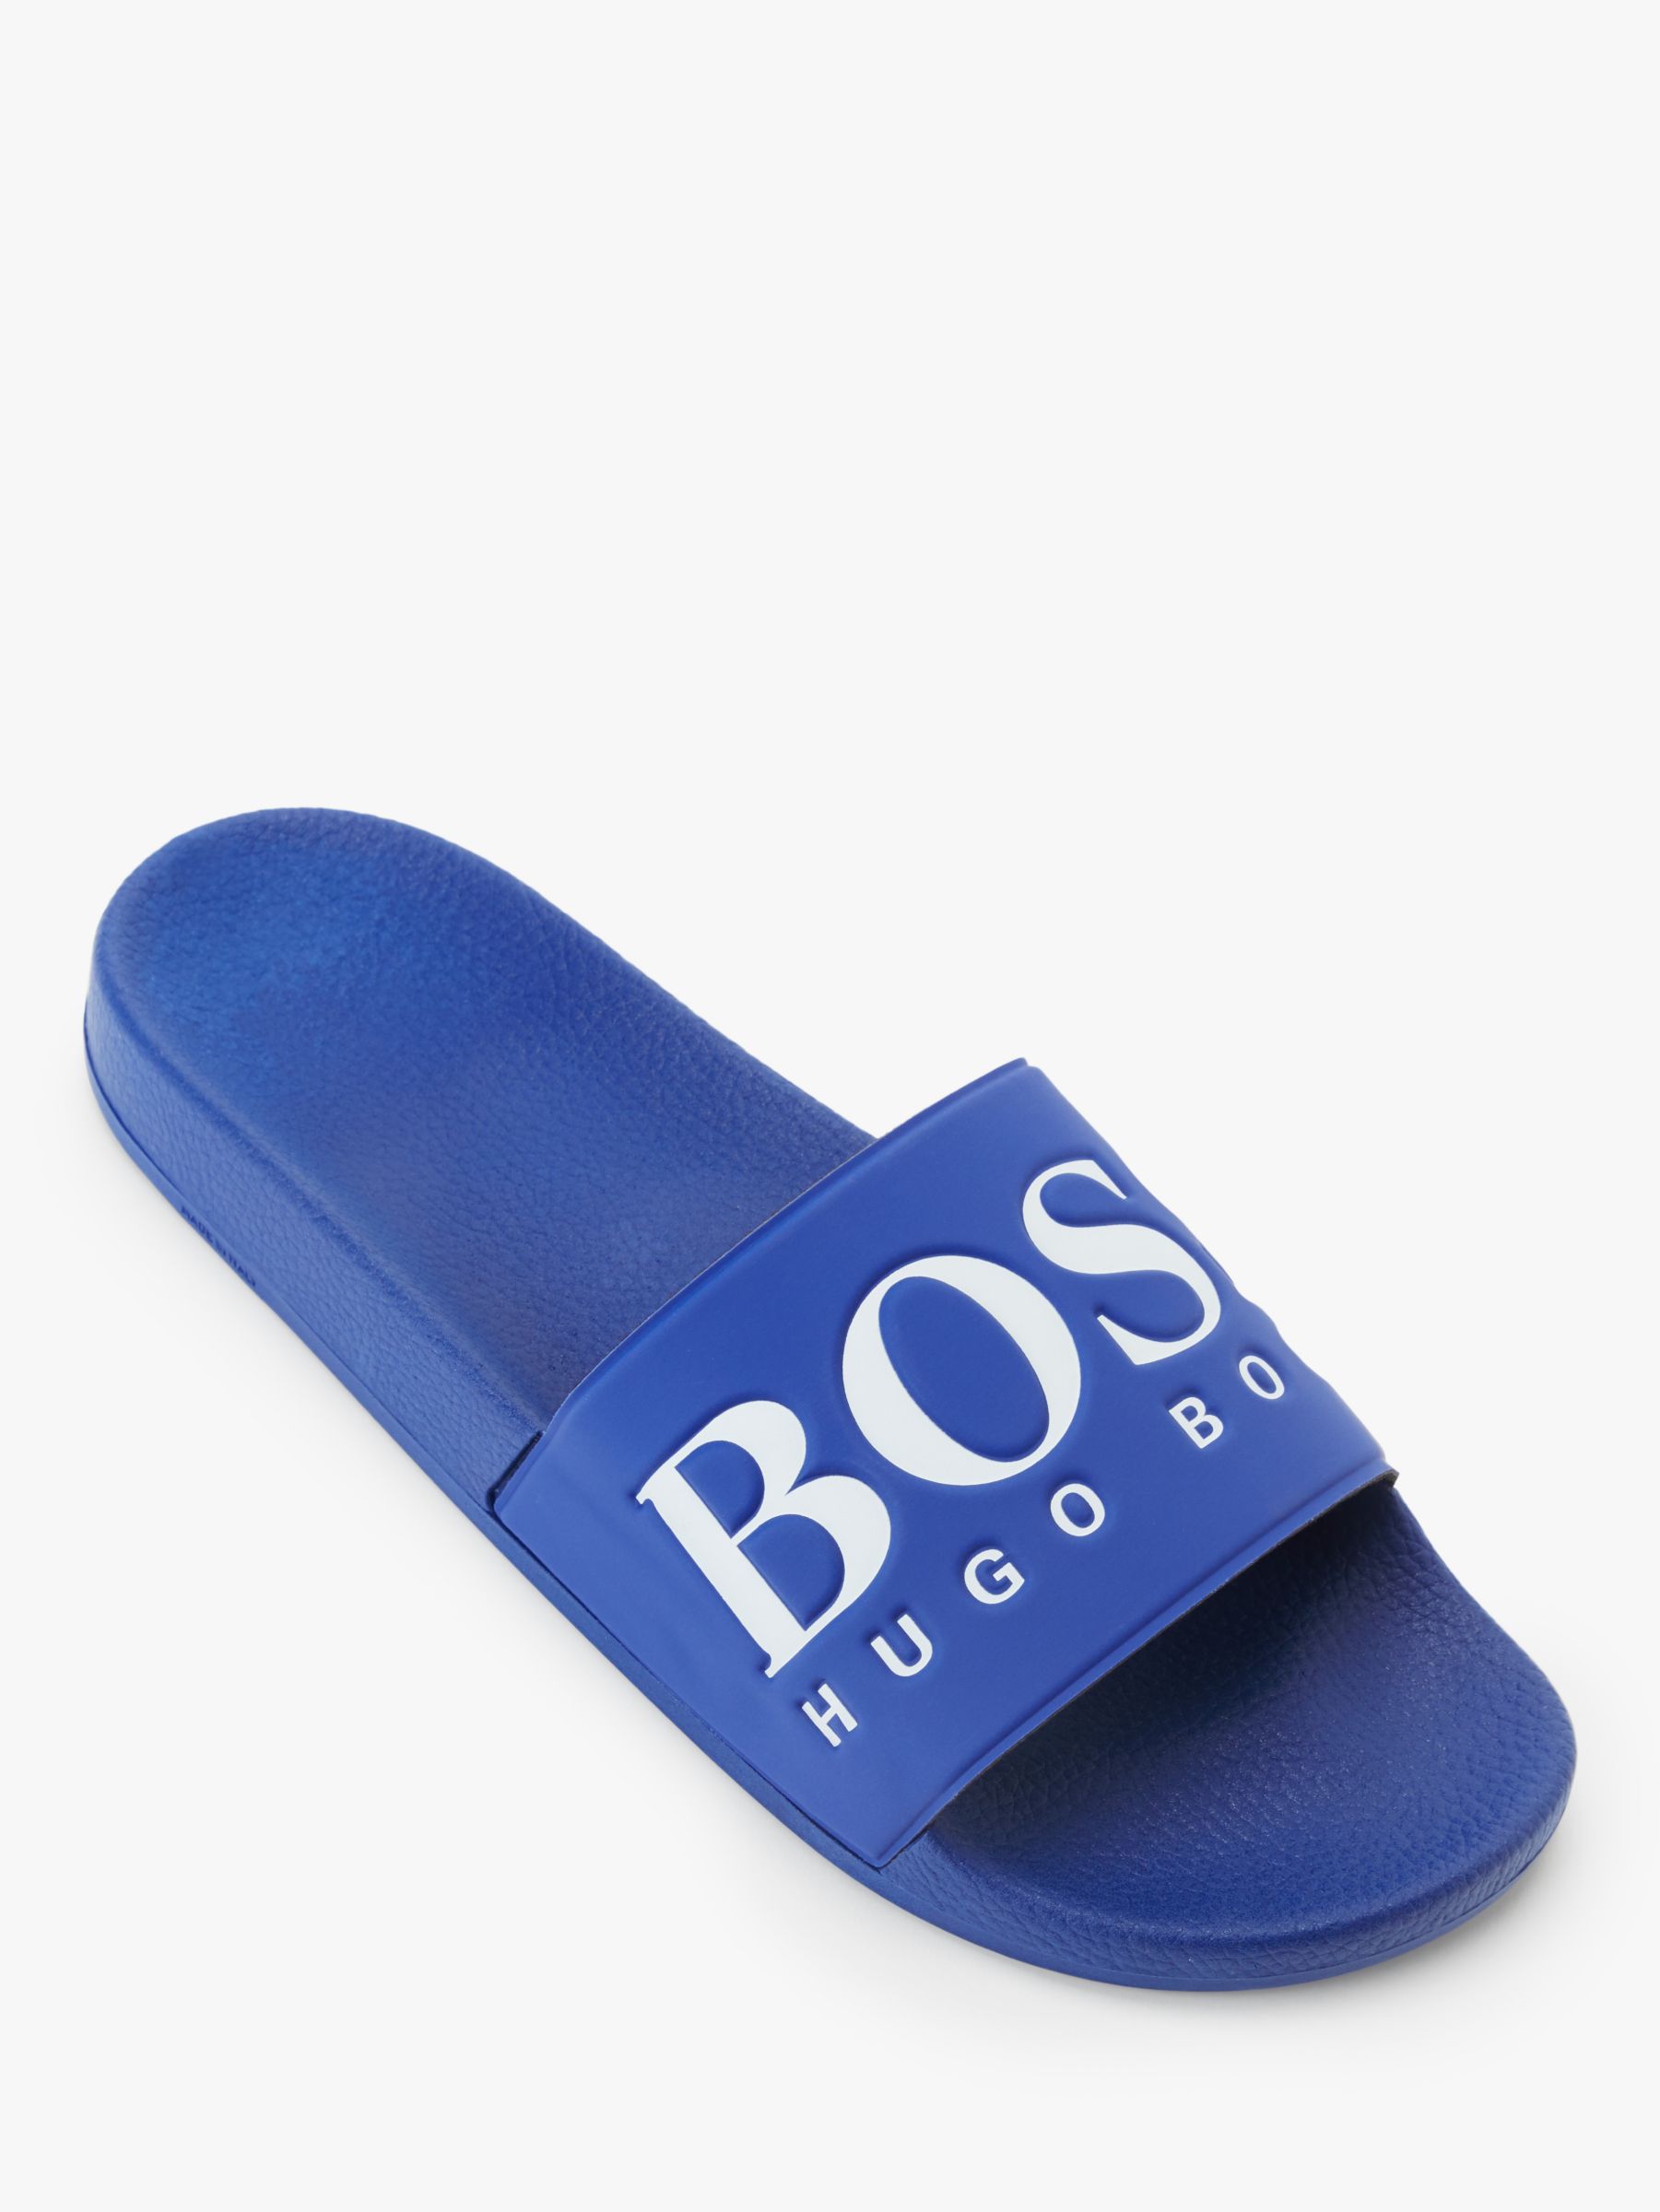 blue hugo boss sliders